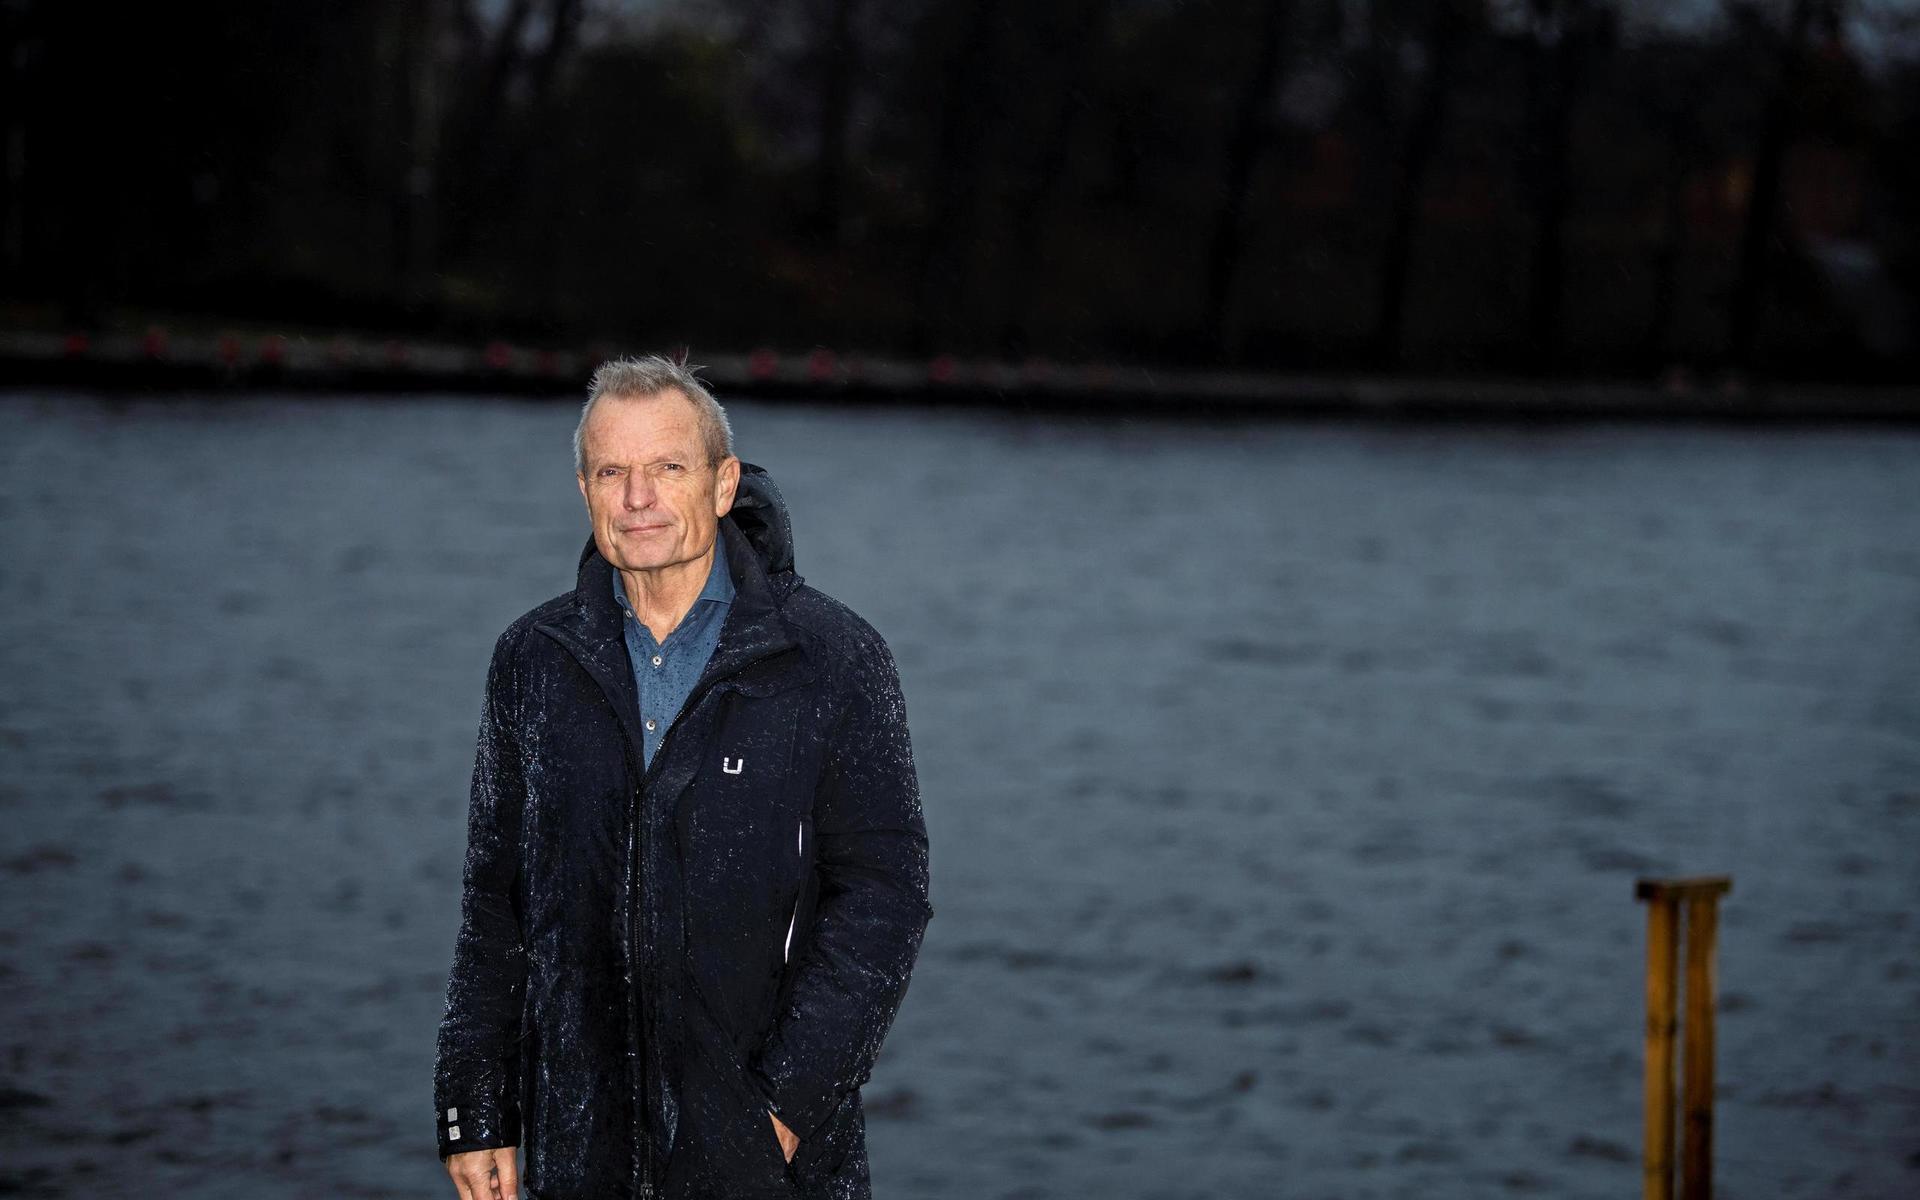 Efter 27 år som spelare, ledare och talangscout i Bayern München lever Björn Andersson idag ett lugnare liv som pensionär i Halmstad.